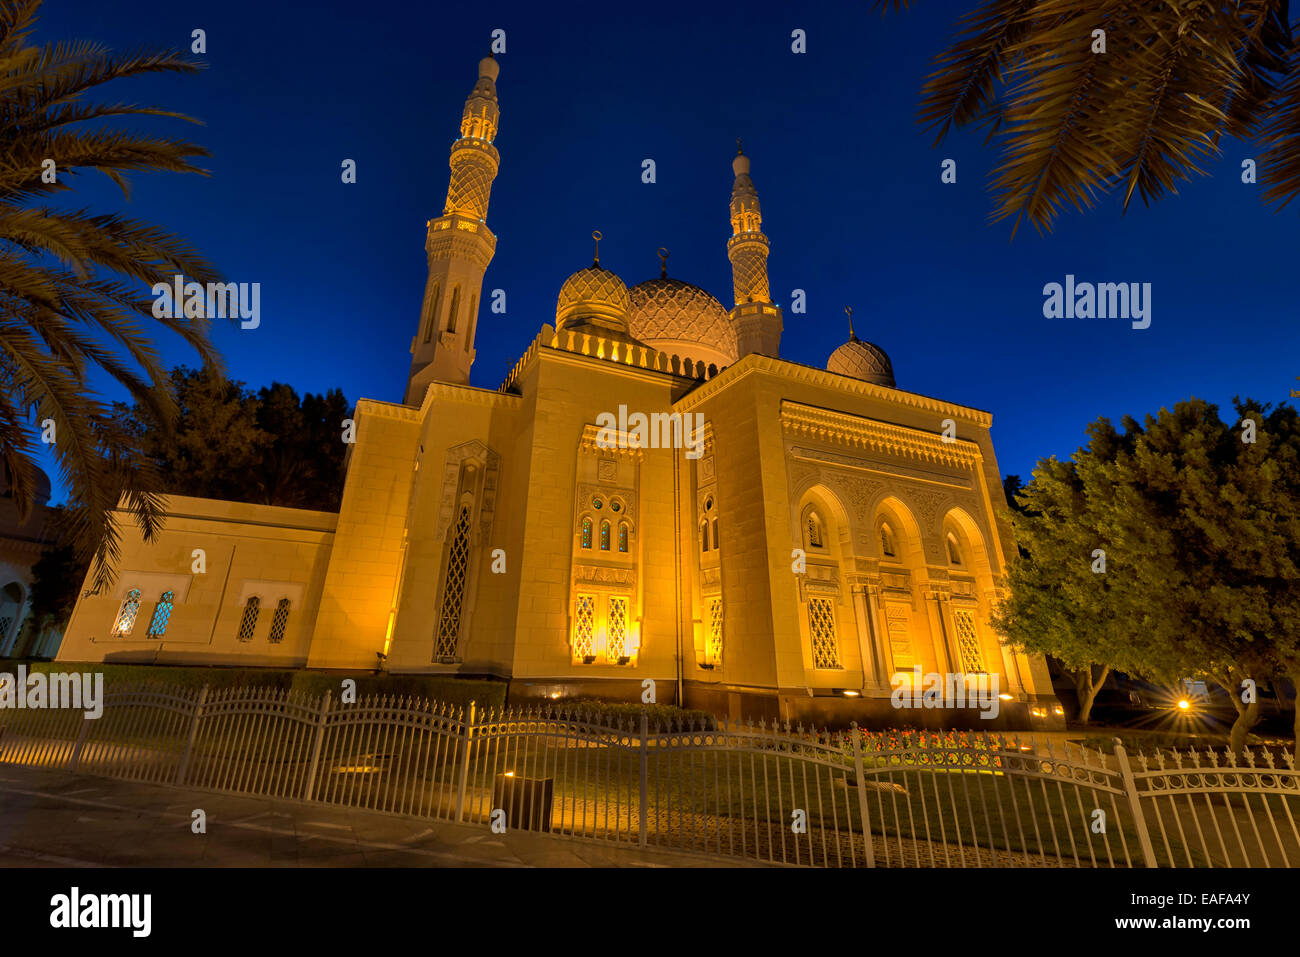 Jumeirah Mosque in Dubai, UAE Stock Photo